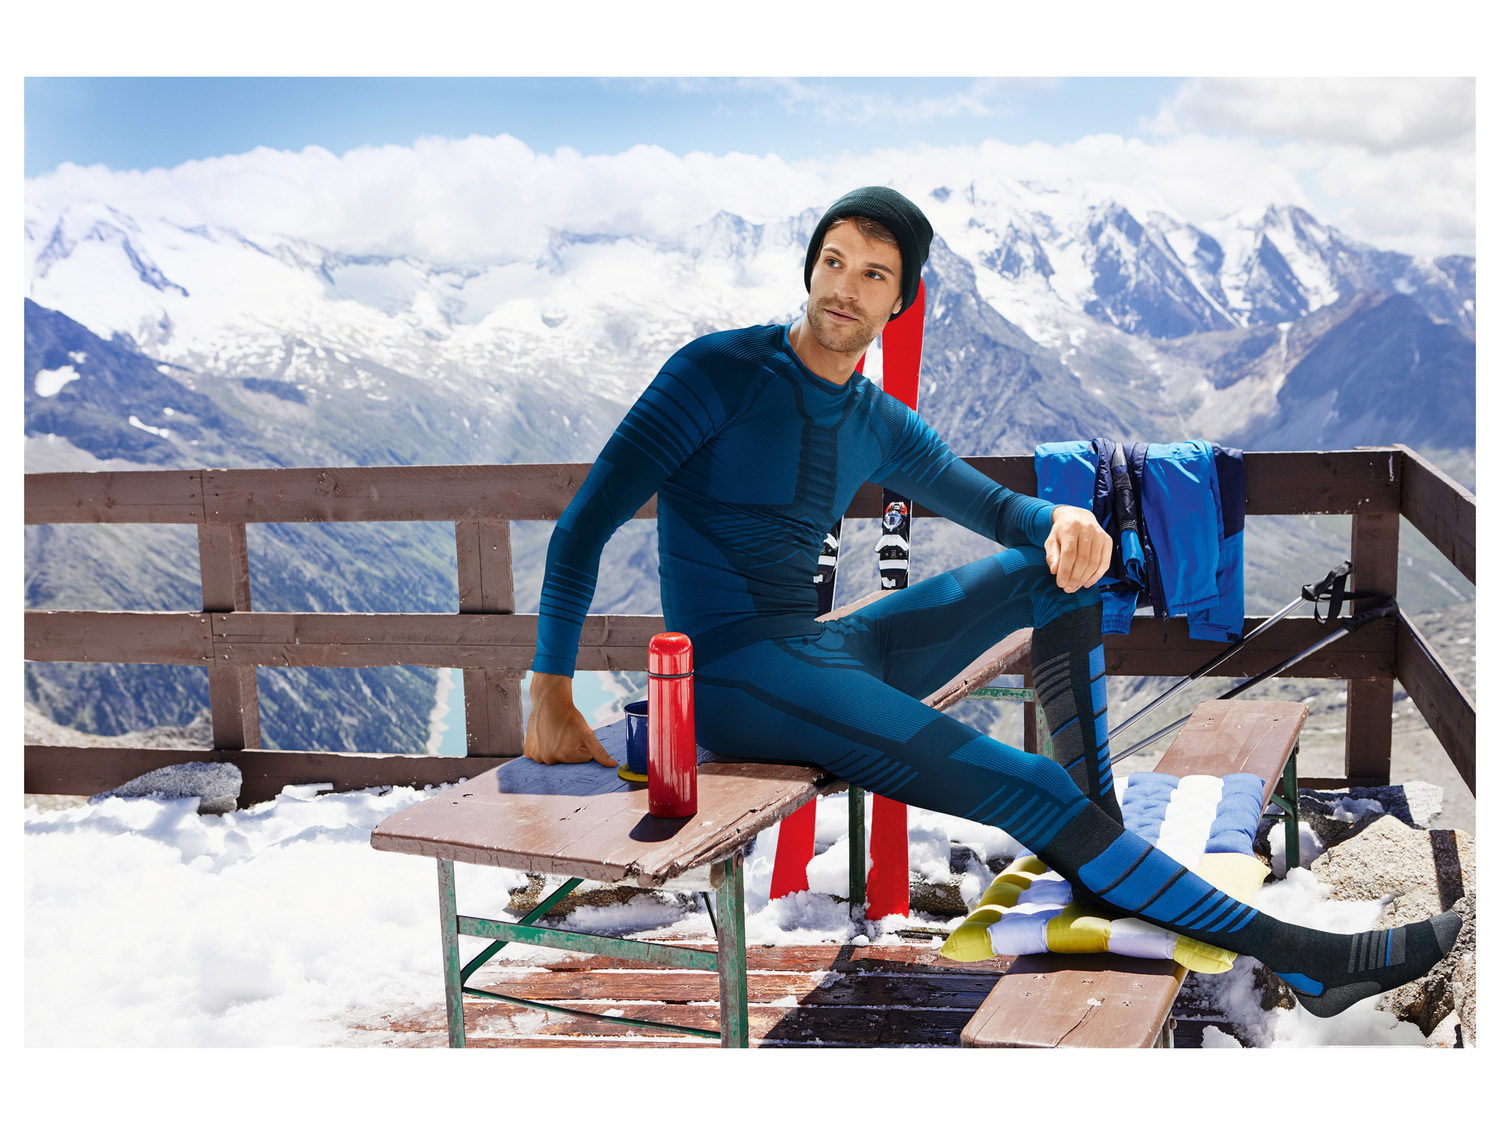 Chaussettes de ski homme , le prix 5.99 € 
- Du 35/36 au 45/46 selon modèle
- ...